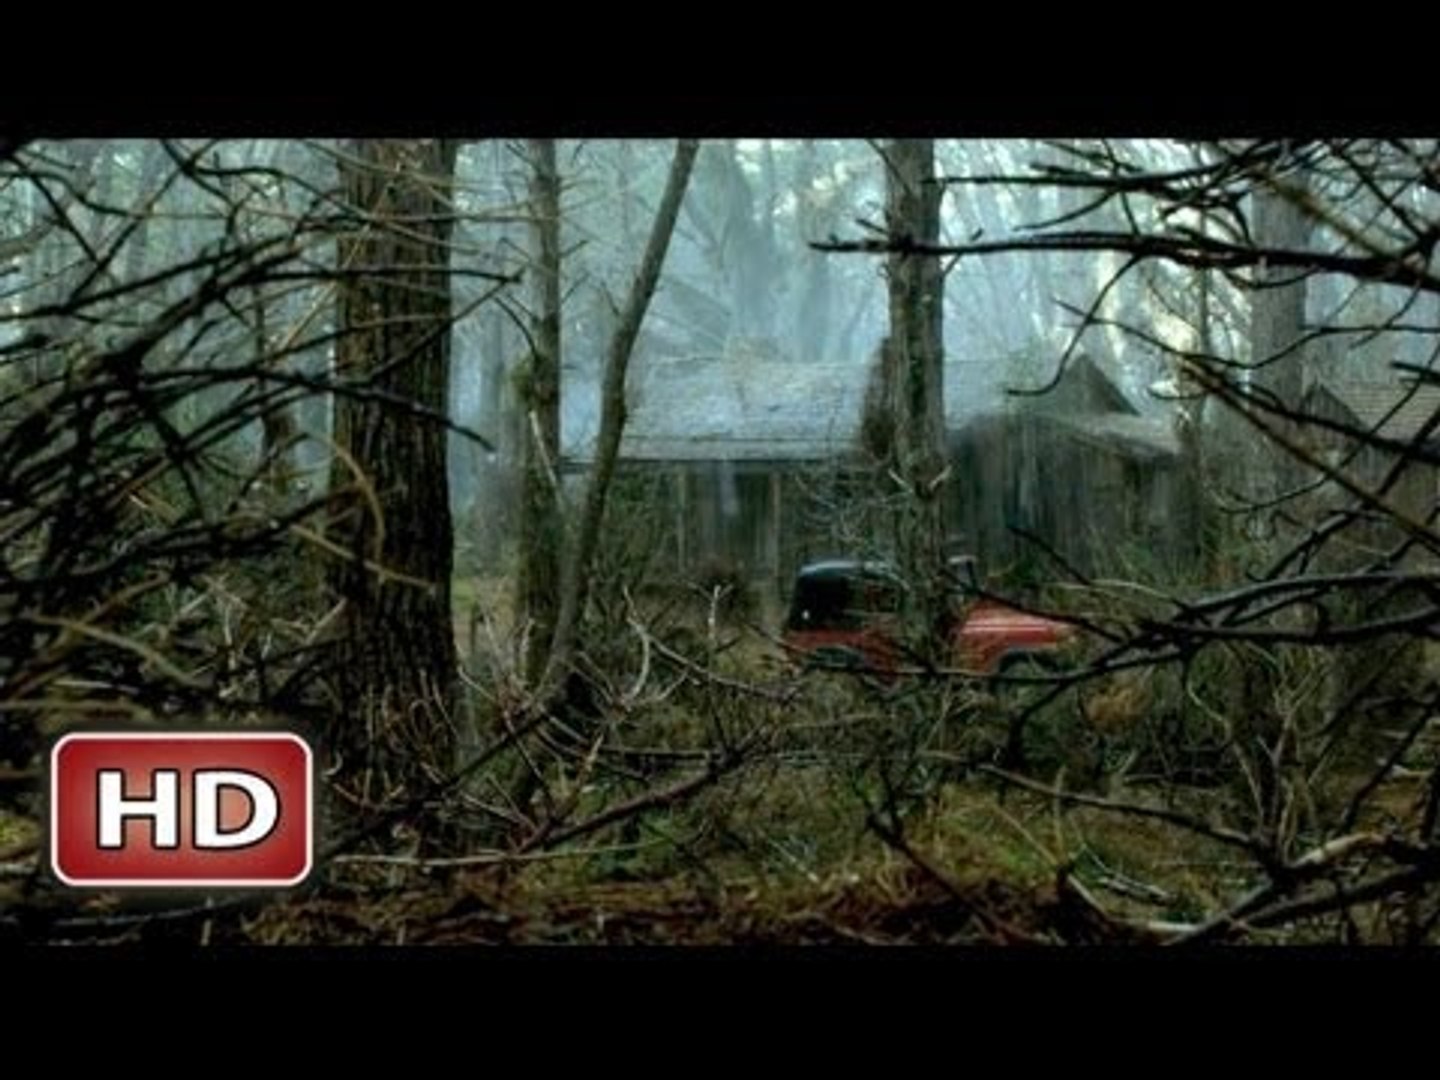 Evil Dead - Trailer #1 RESTRICTED 